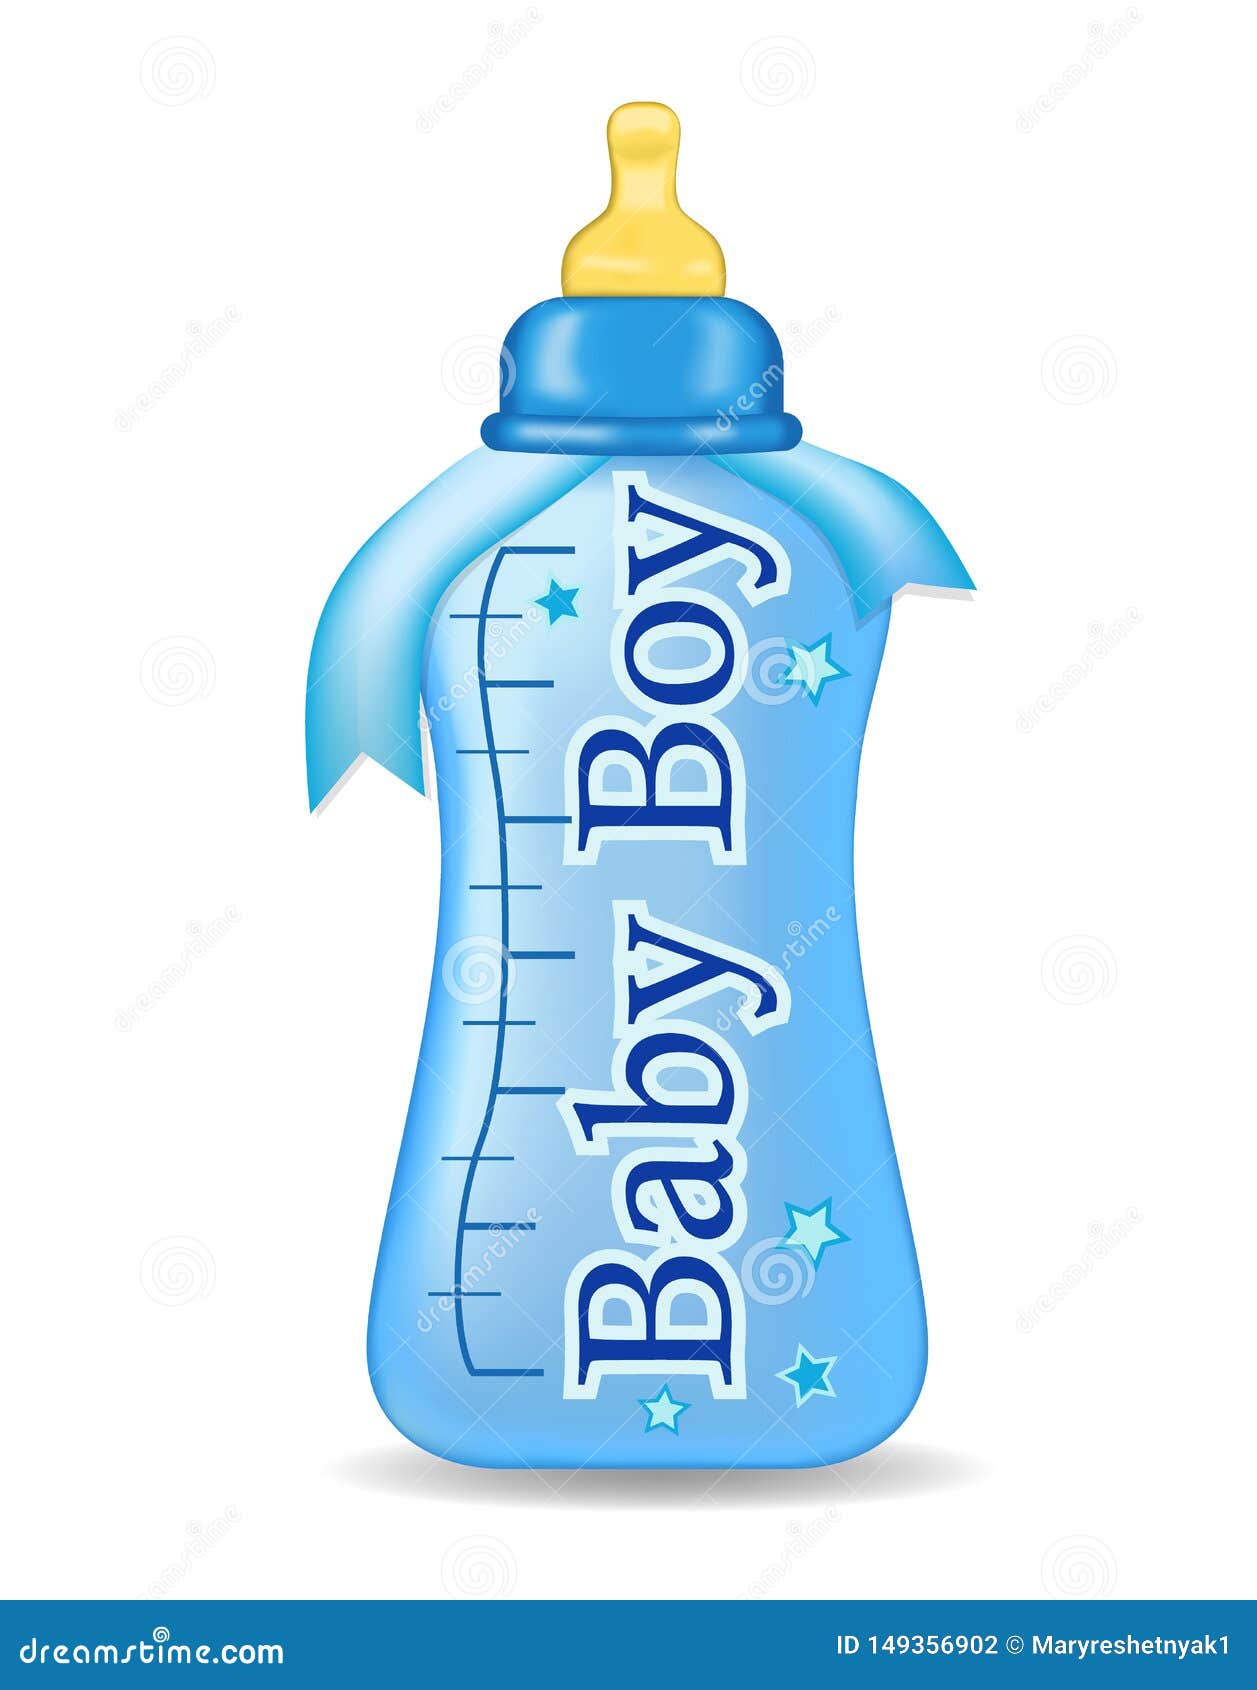 Download Background With Baby Bottle Cartoon Vector | CartoonDealer.com #50702933